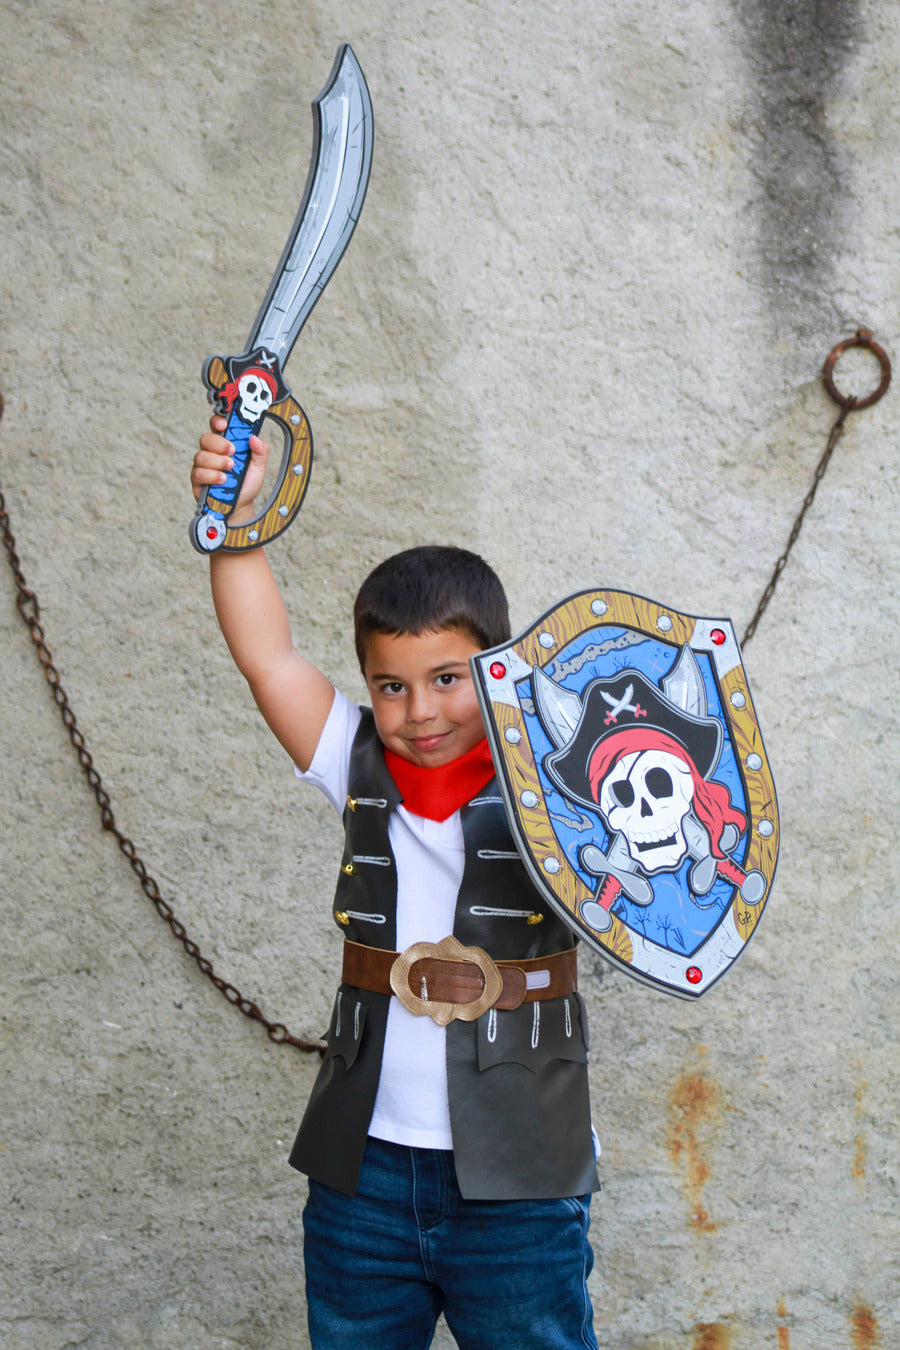 Captain Skully Pirate EVA Sword